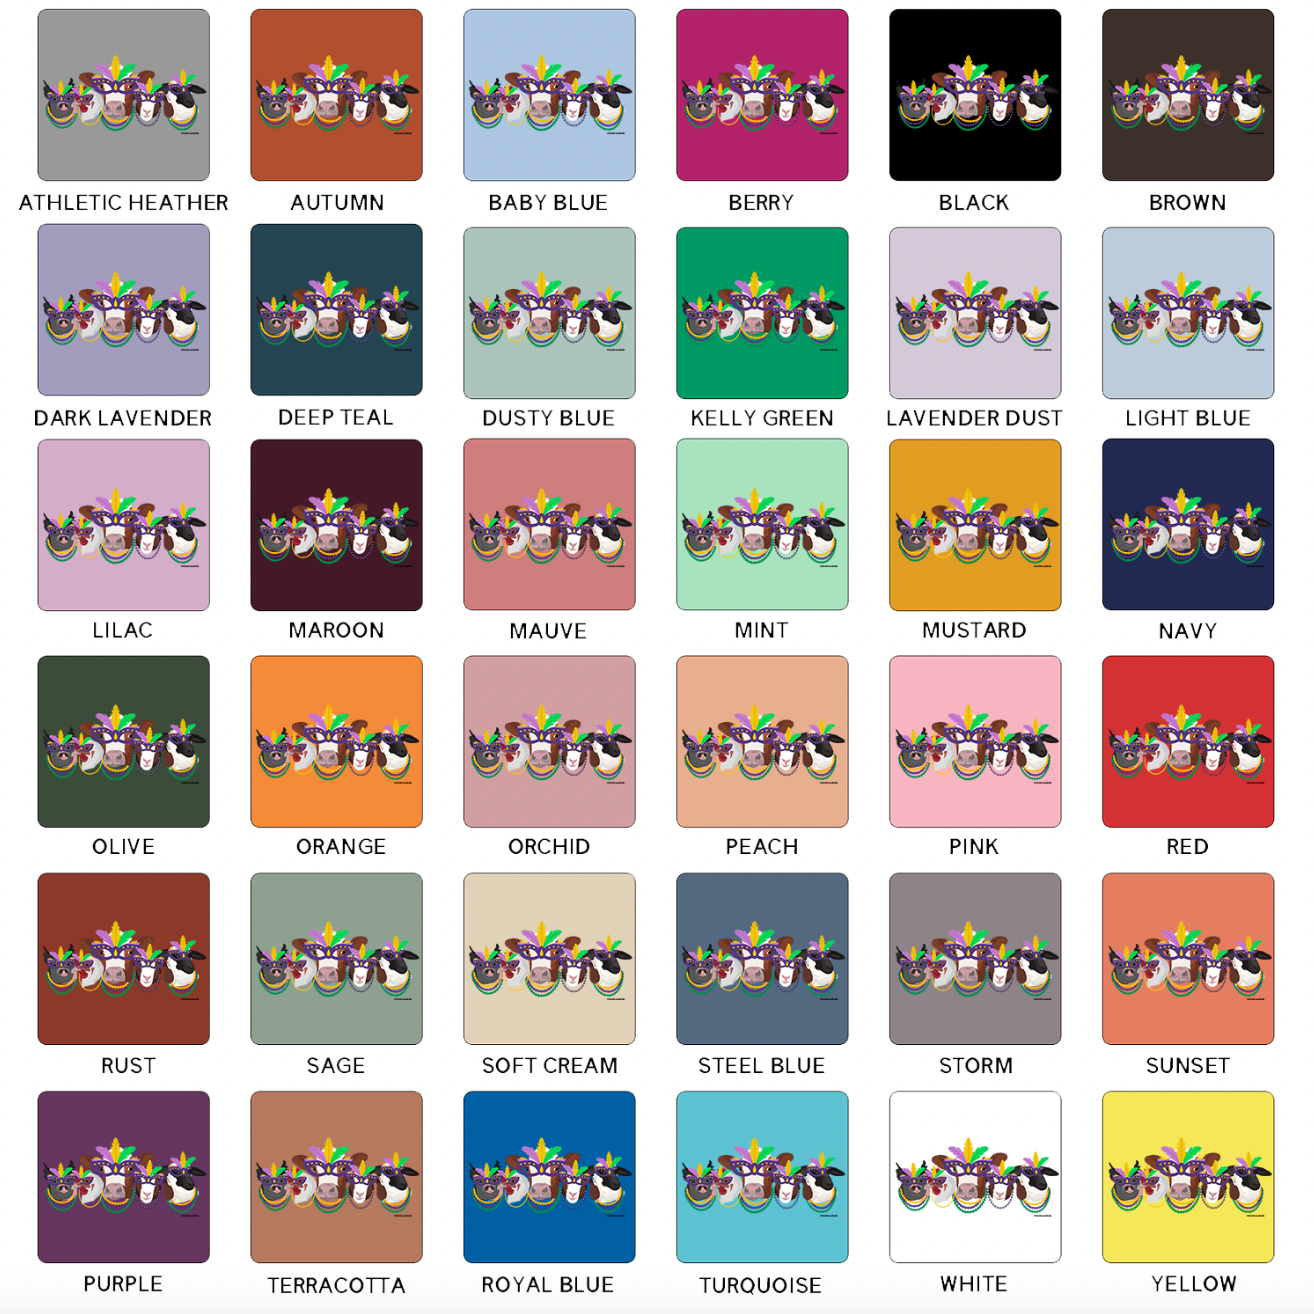 Mardi Gras Stock T-Shirt (XS-4XL) - Multiple Colors!